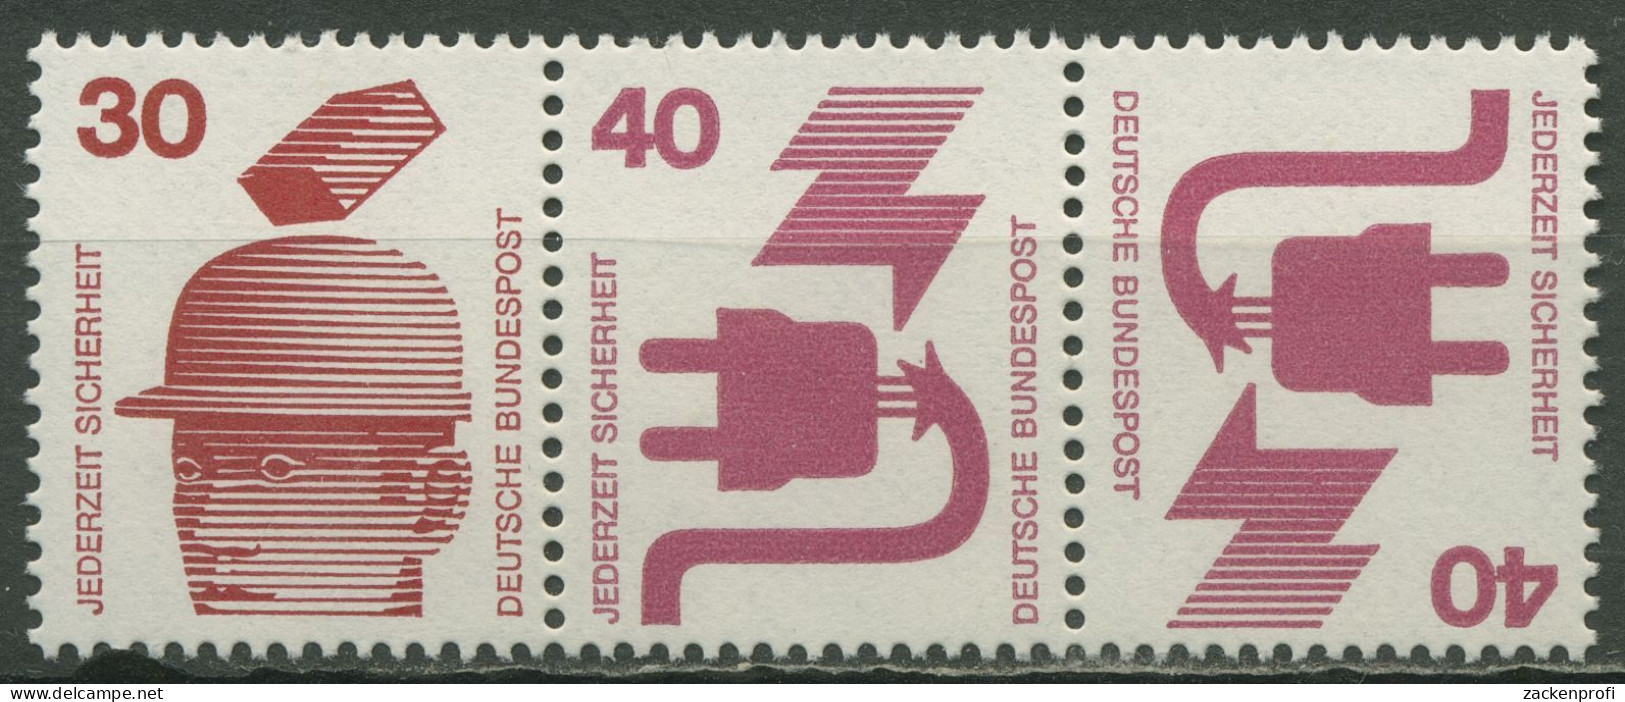 Bund 1973 Unfallverhütung Zusammendruck WK 3 B Postfrisch - Se-Tenant